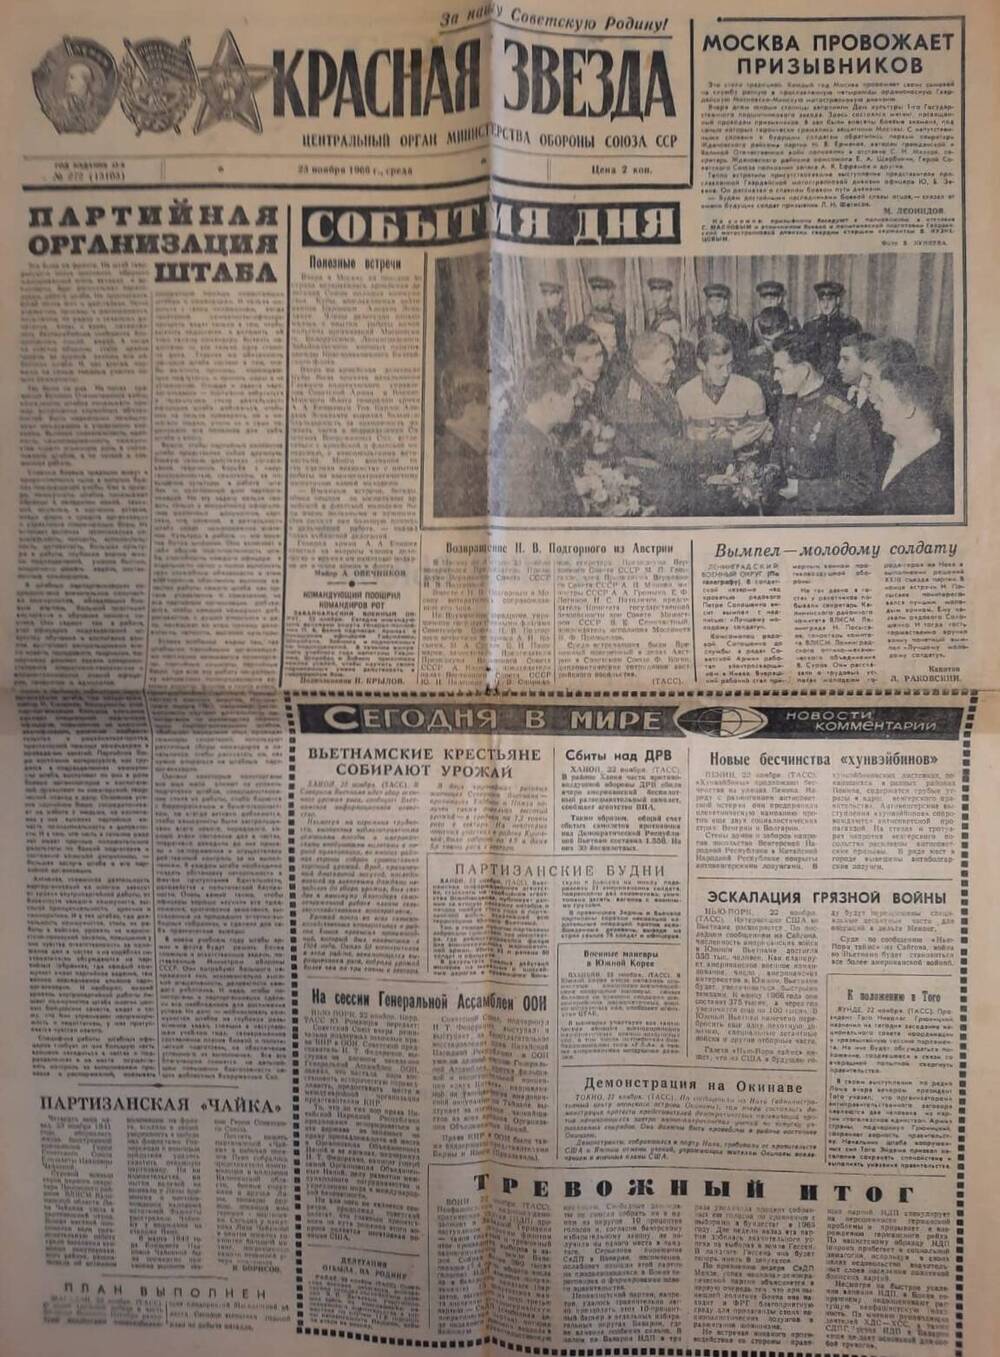 Газета  Красная звезда № 272 от 23 ноября 1966 года  Статья Знаменосцы славы известны Г. Омельчук.